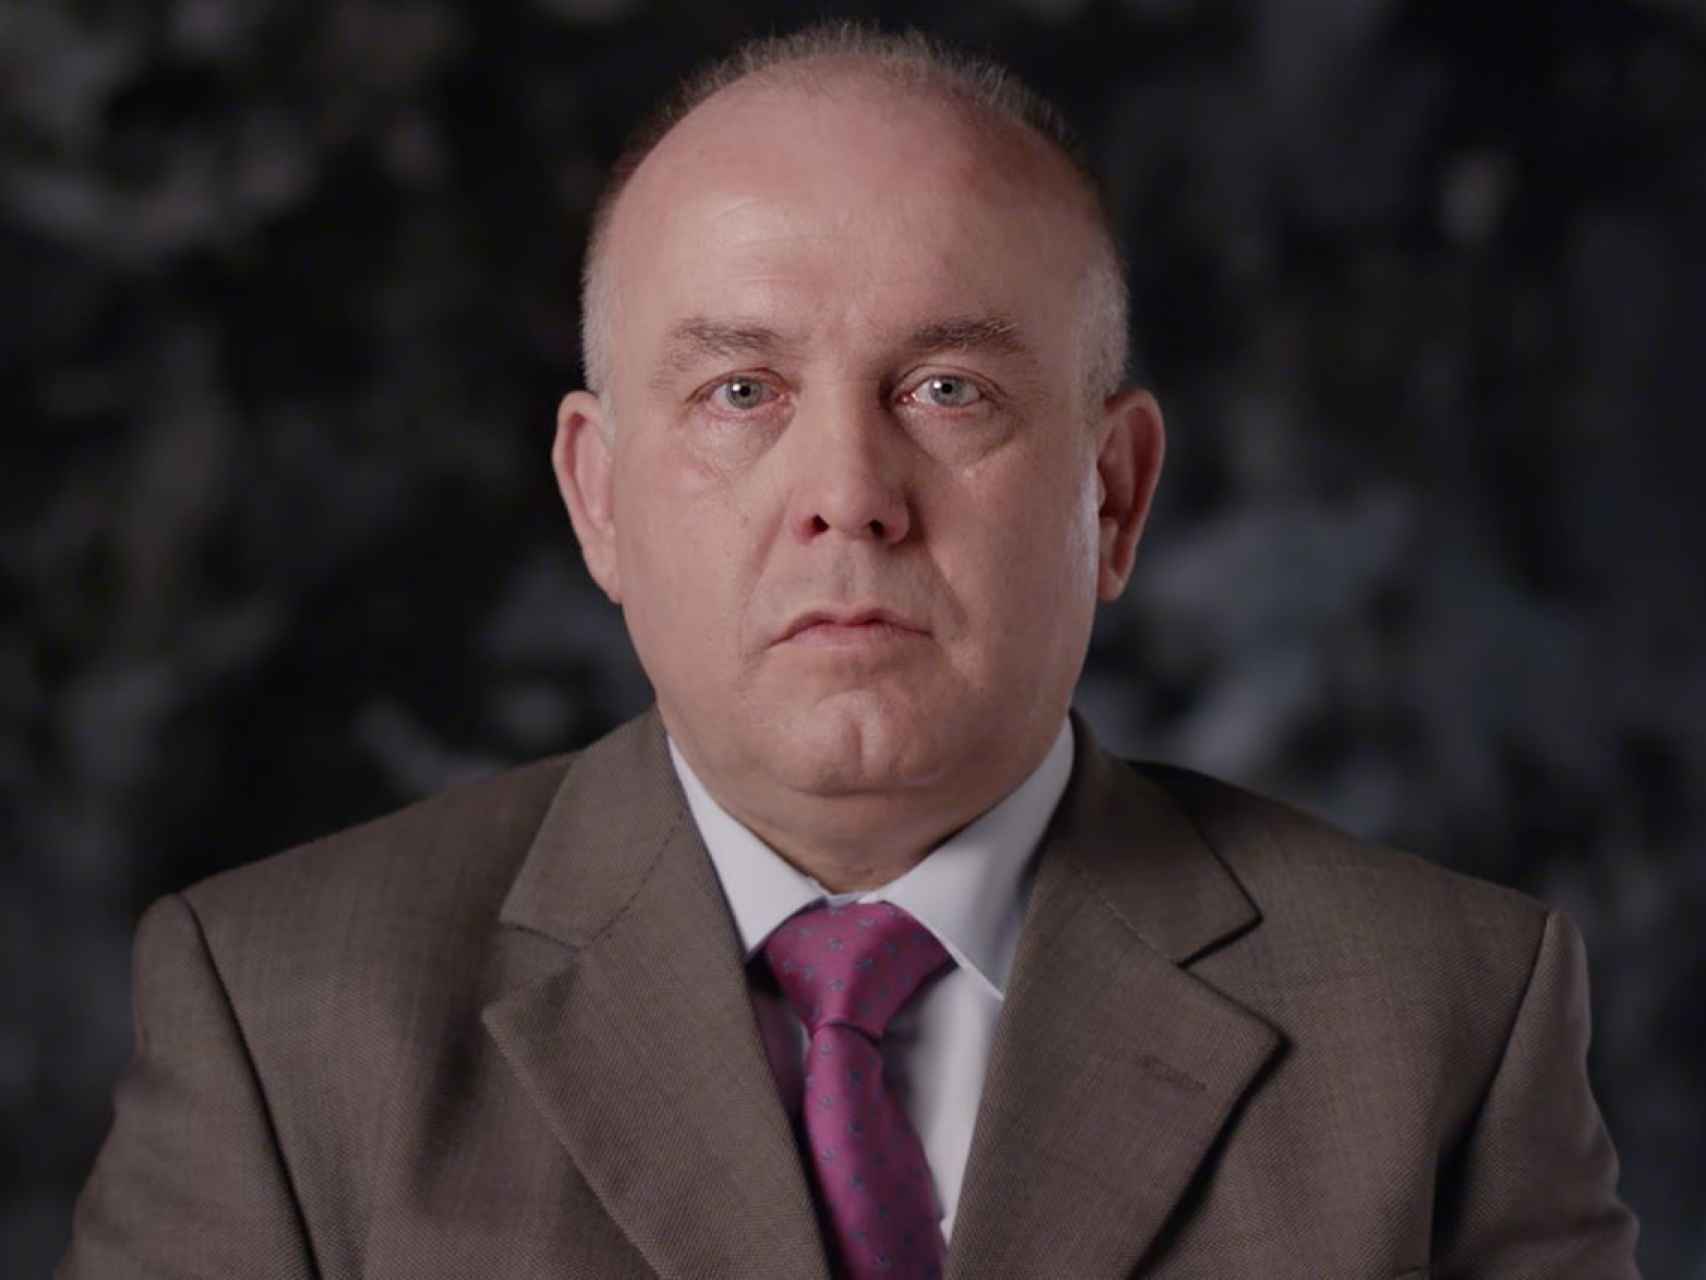 El abogado Gonzalo Boye en un fotograma del documental.